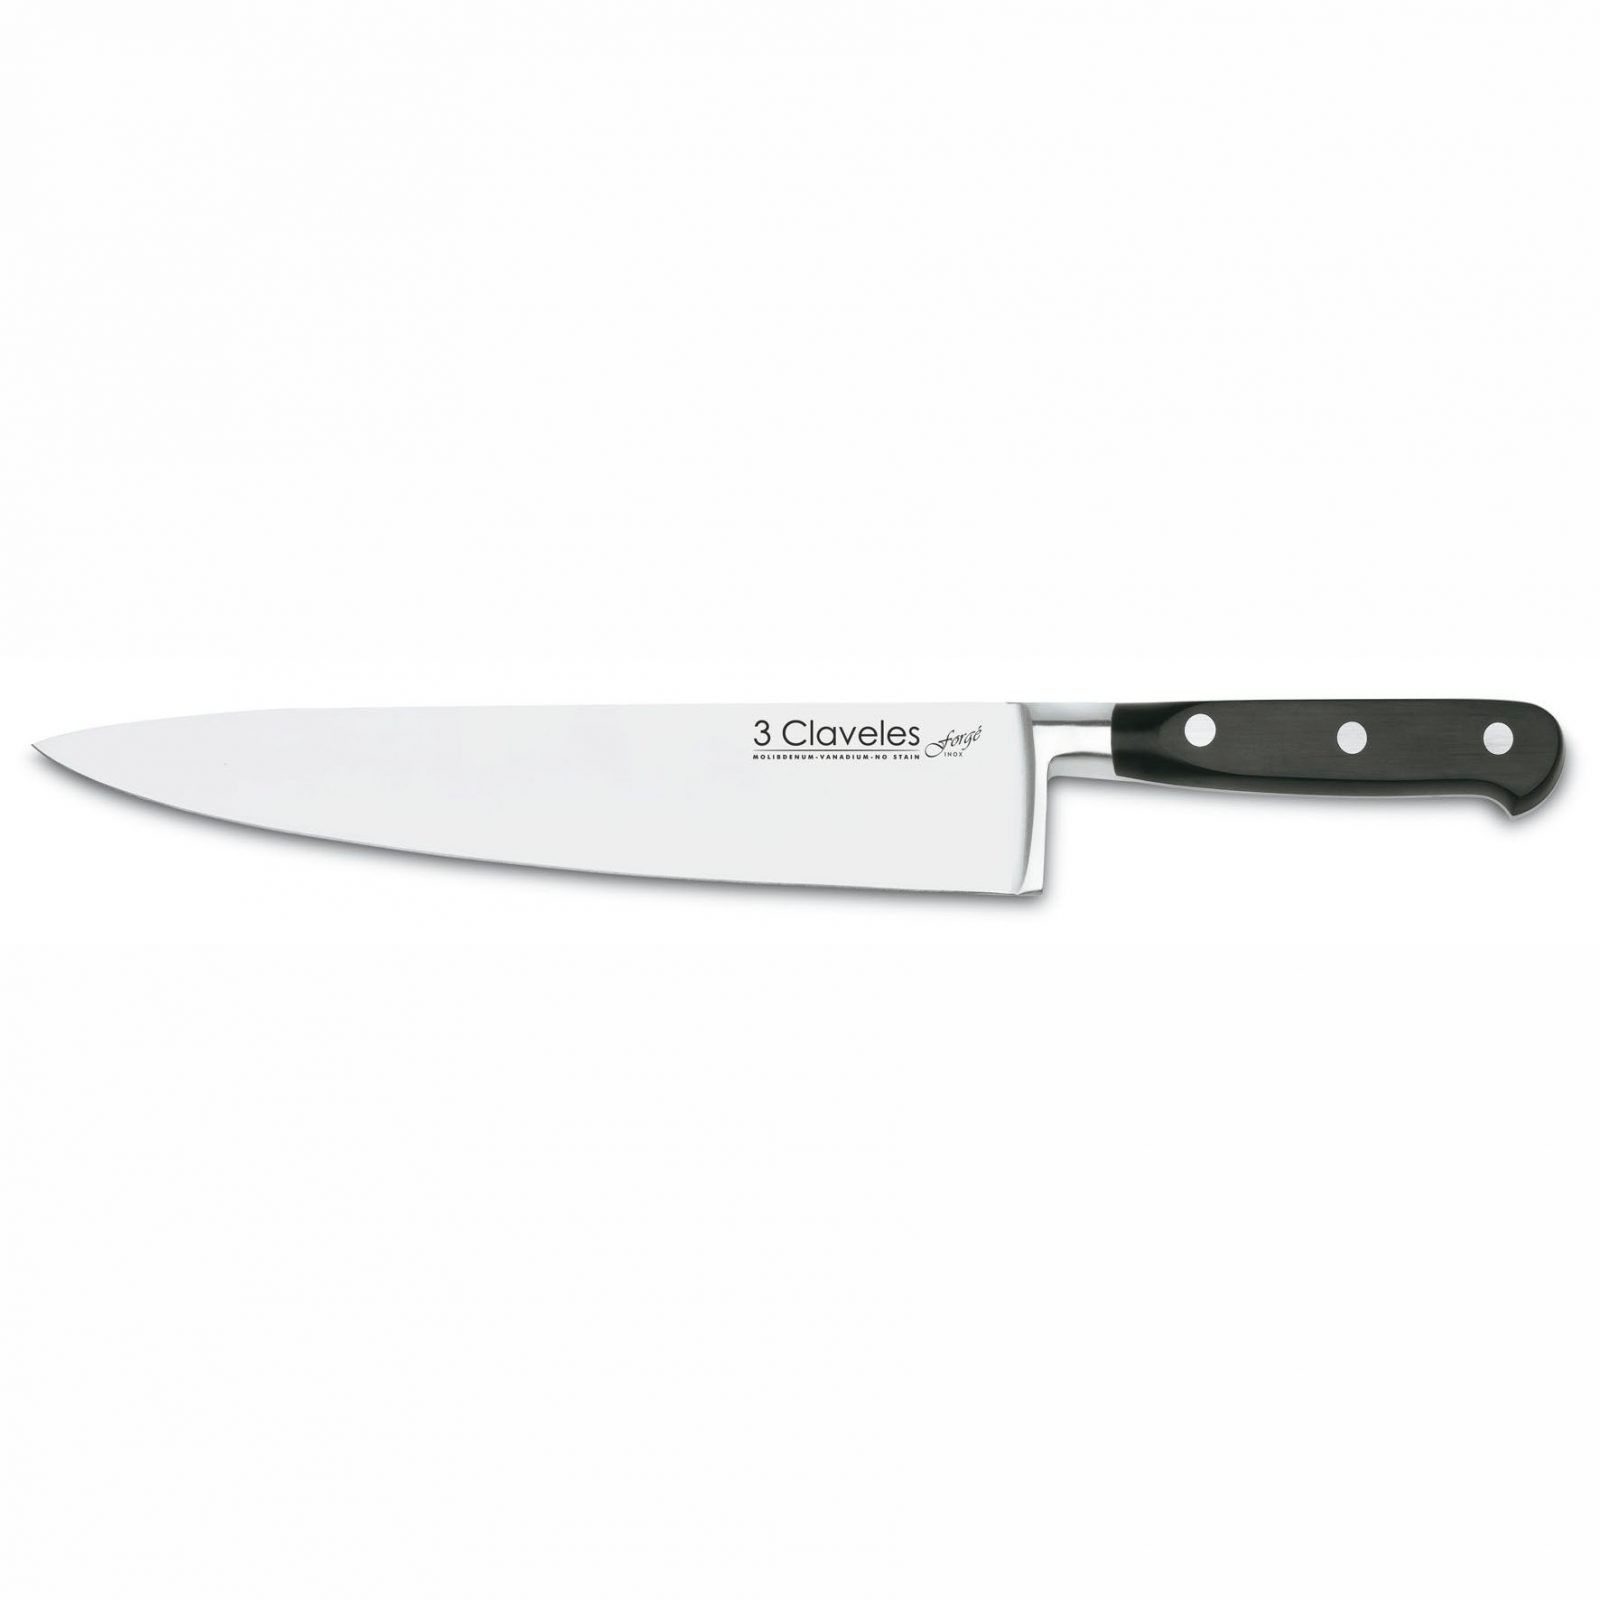 https://www.cuchillalia.com/wordpress/wp-content/uploads/2015/02/cuchillalia-3-claveles-01564-forge-cuchillo-cocinero-chef-25cm.jpg